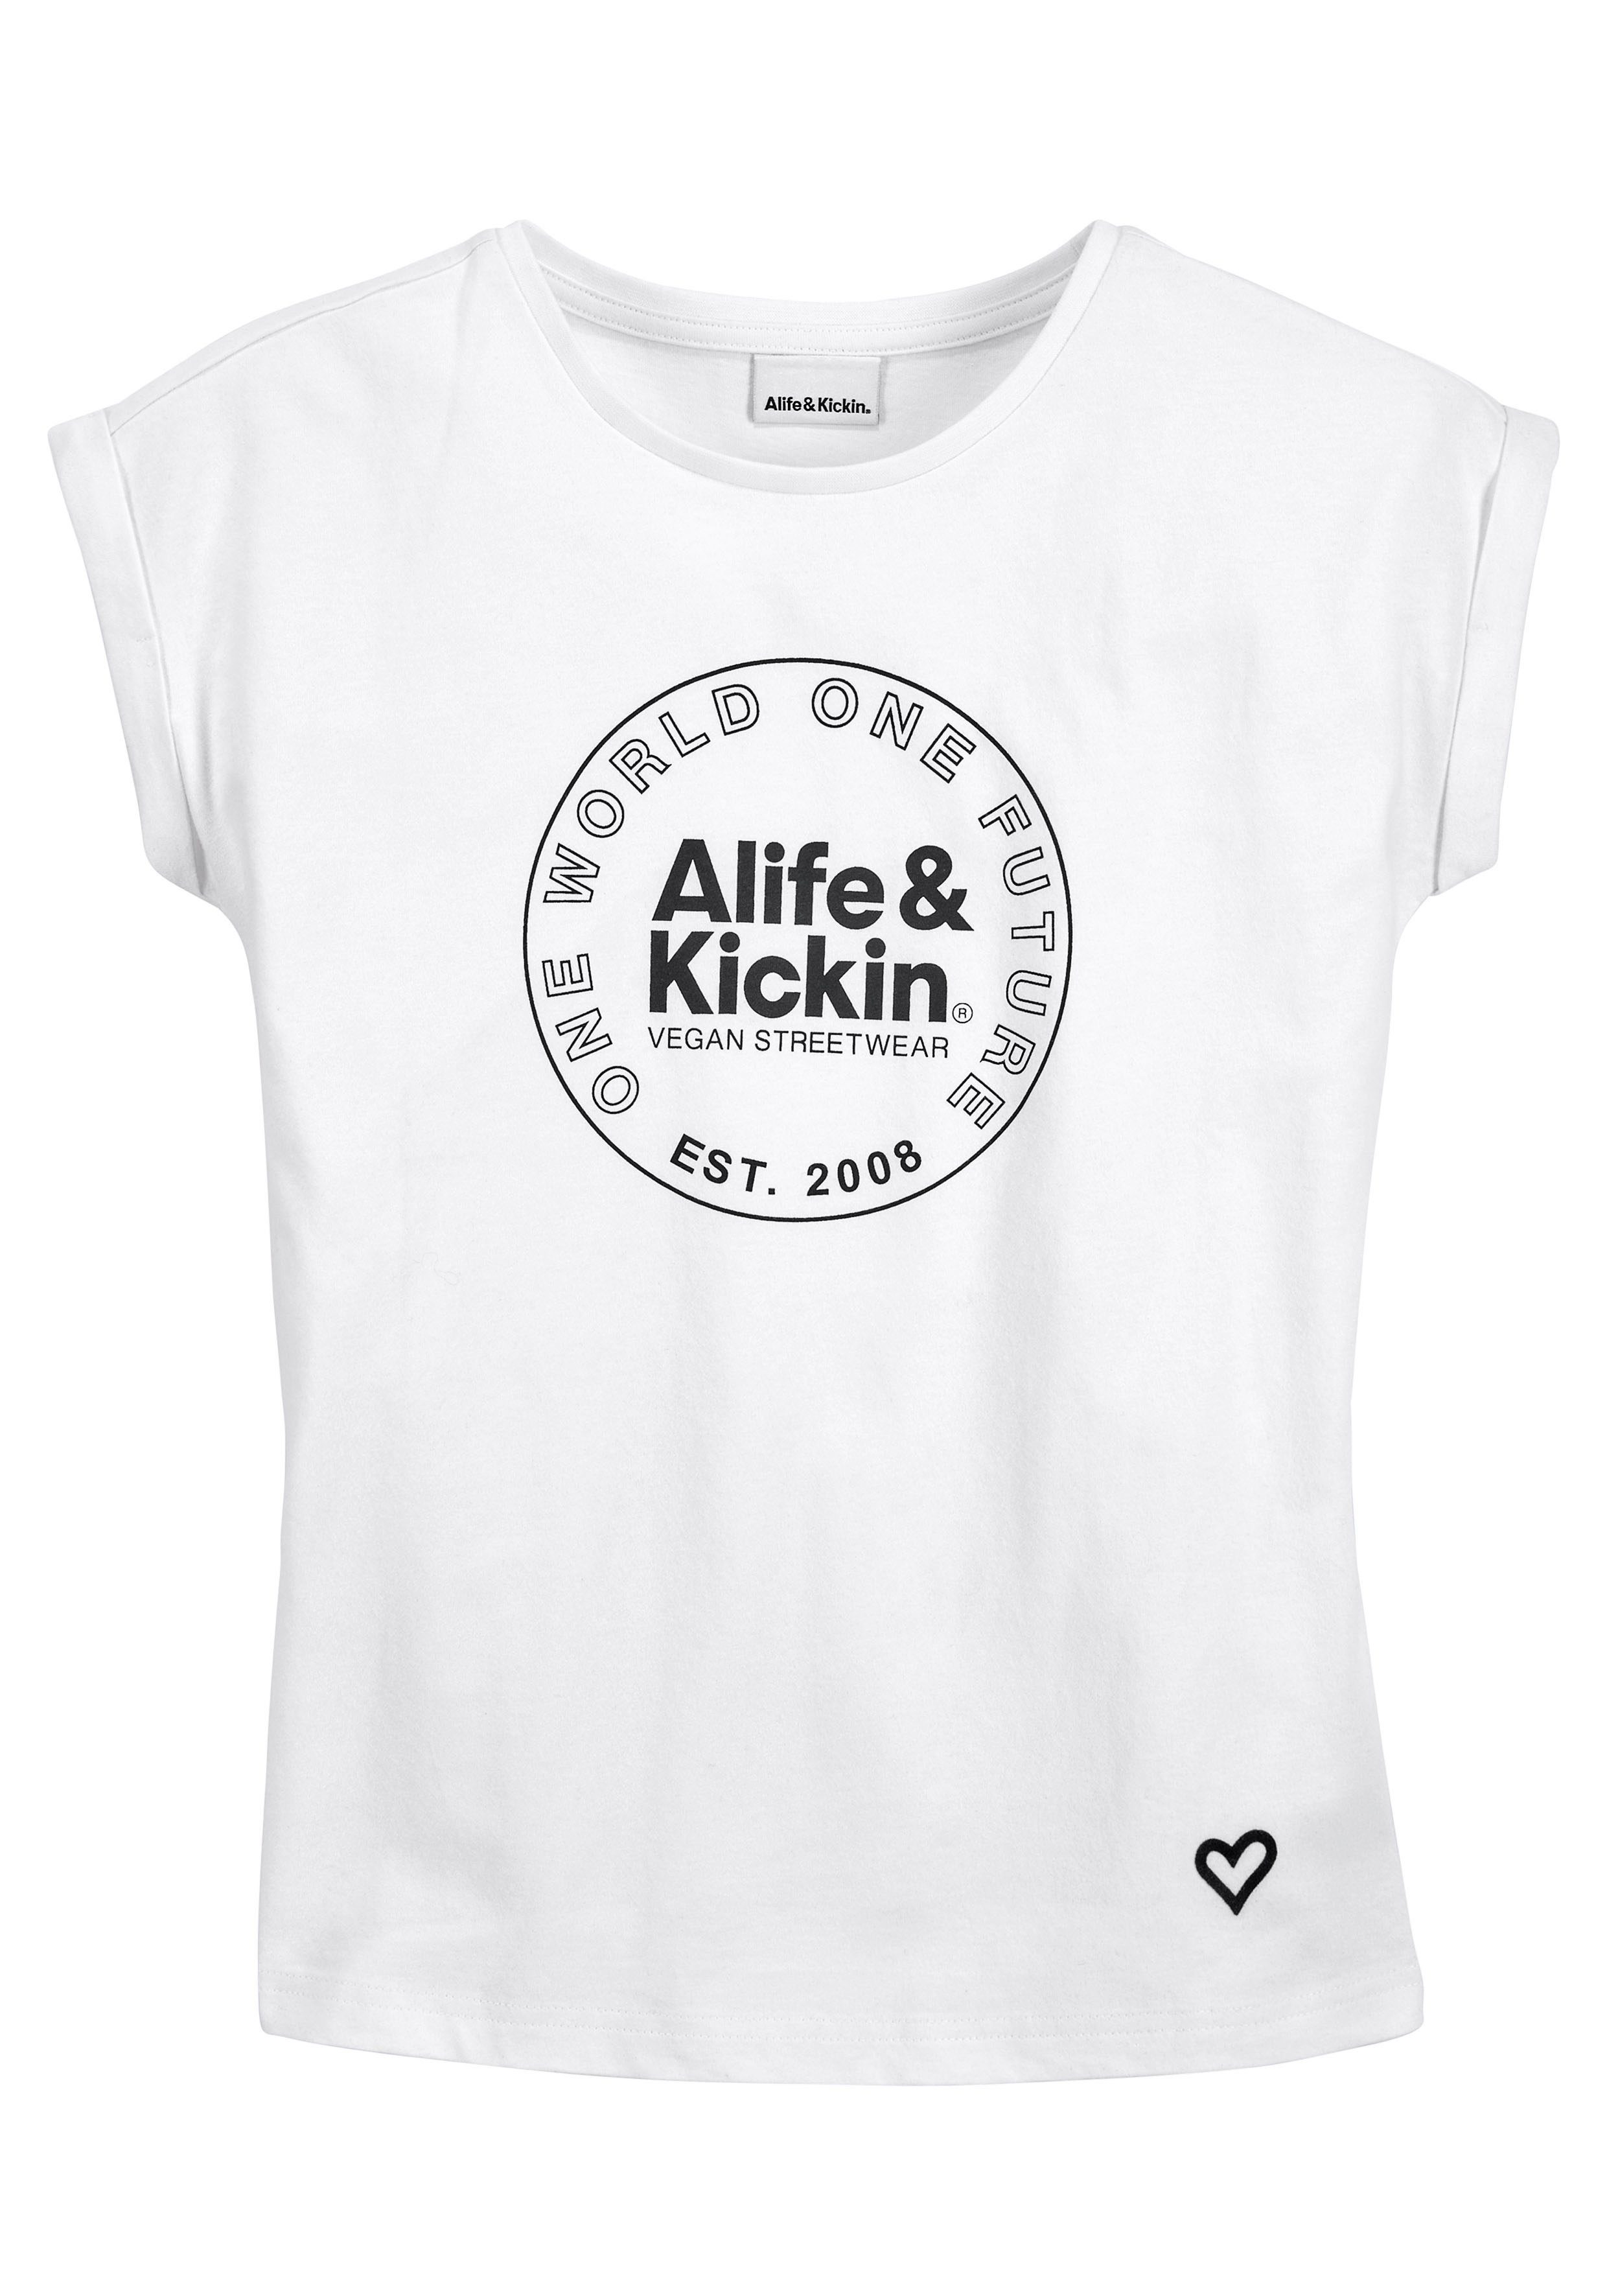 Alife & Kickin T-Shirt Kids. Kickin mit Druck, für NEUE & Logo Alife MARKE